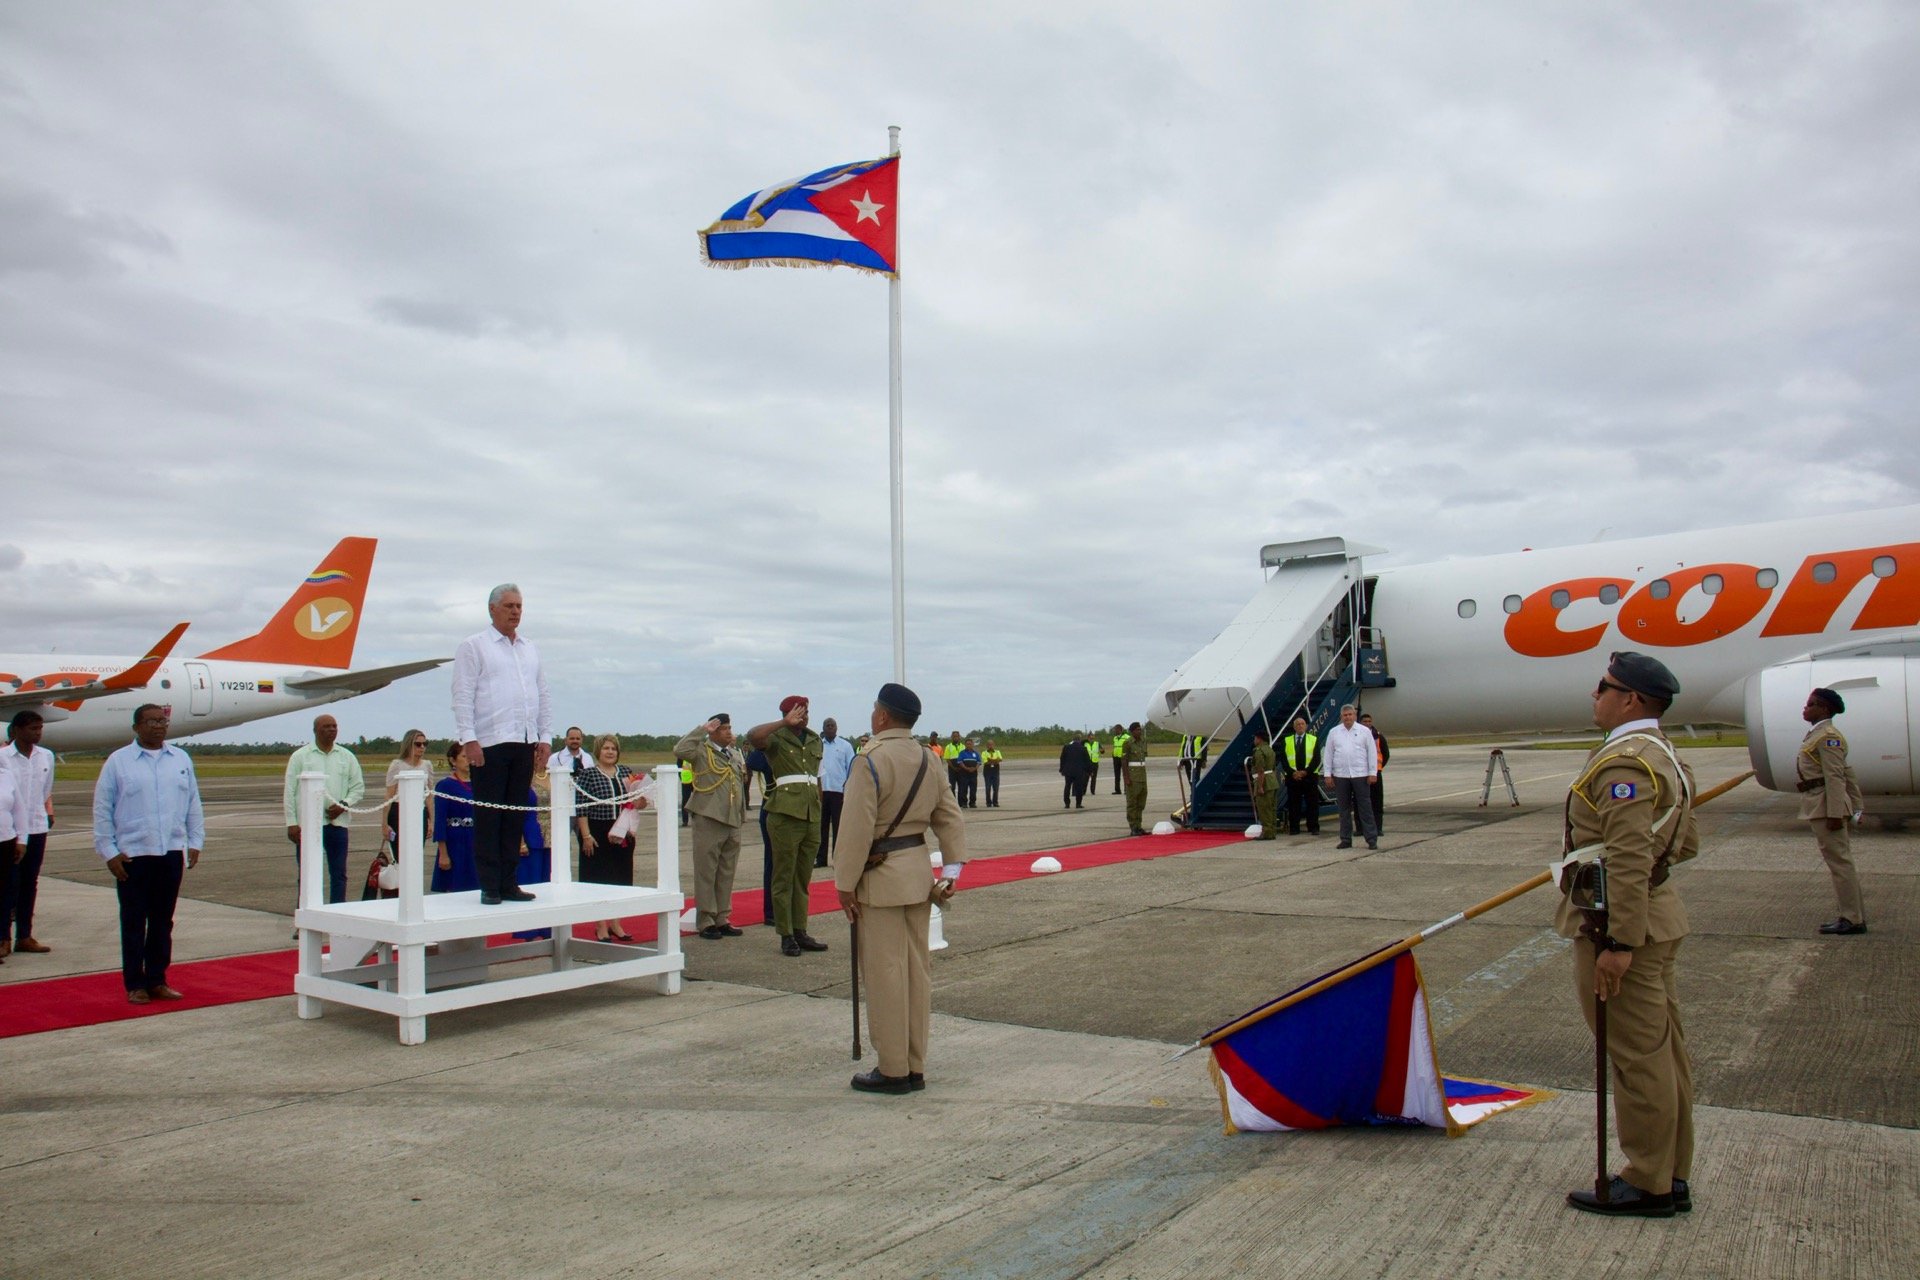 El presidente cubano en el aeropuerto beliceño tras su llegada en visita oficial. Foto: Estudios Revolución.